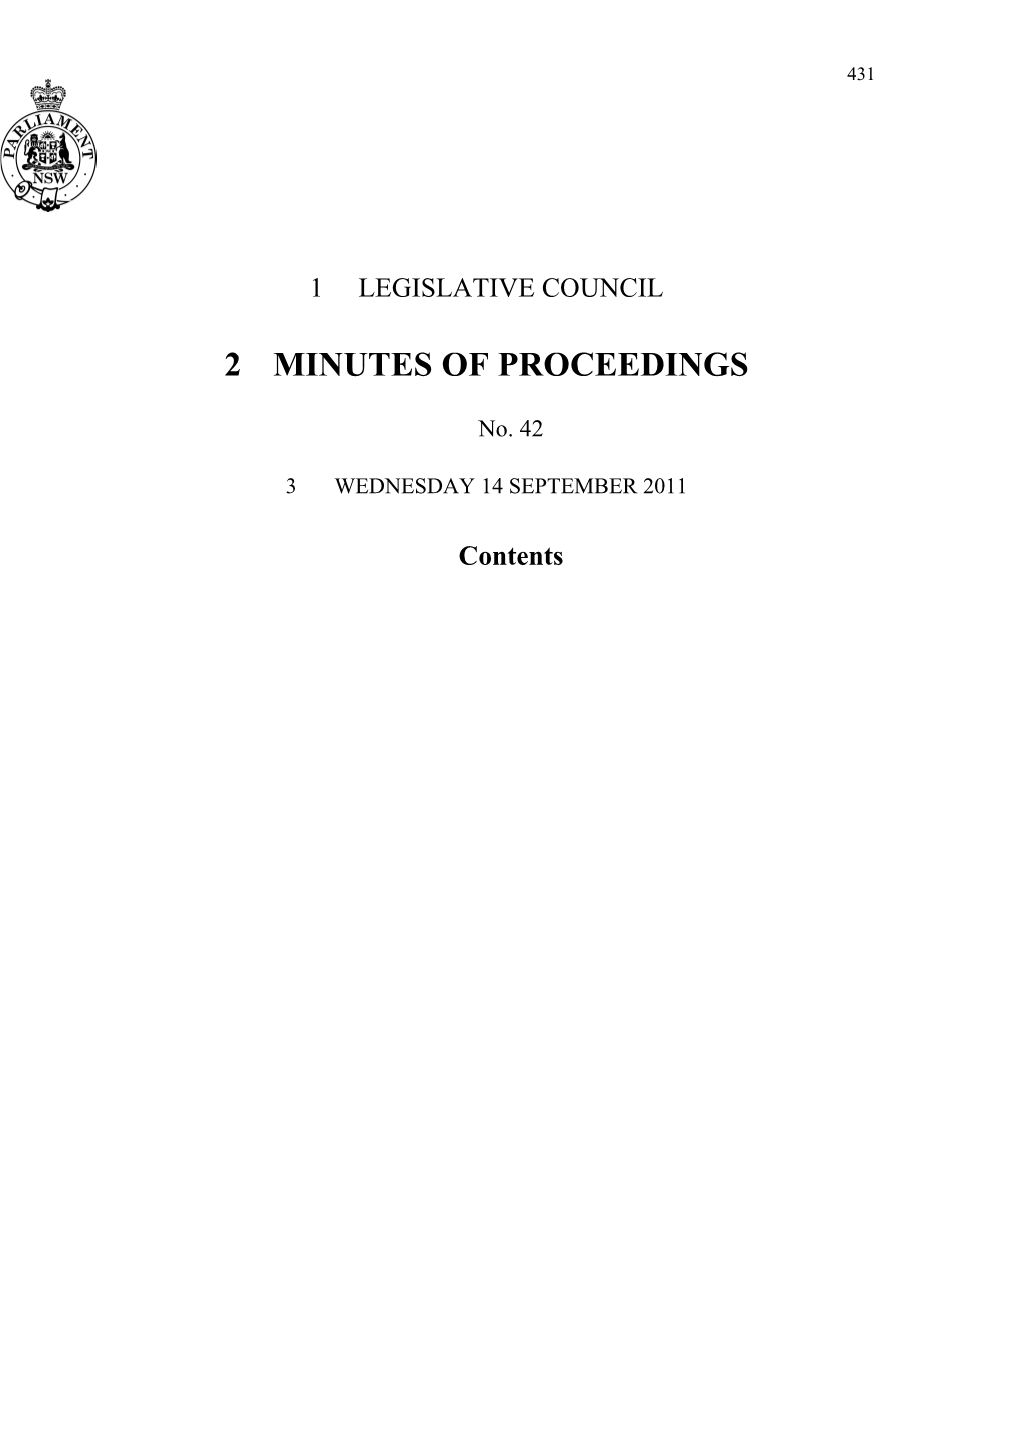 Legislative Council Minutes No. 42 Wednesday 14 September 2011